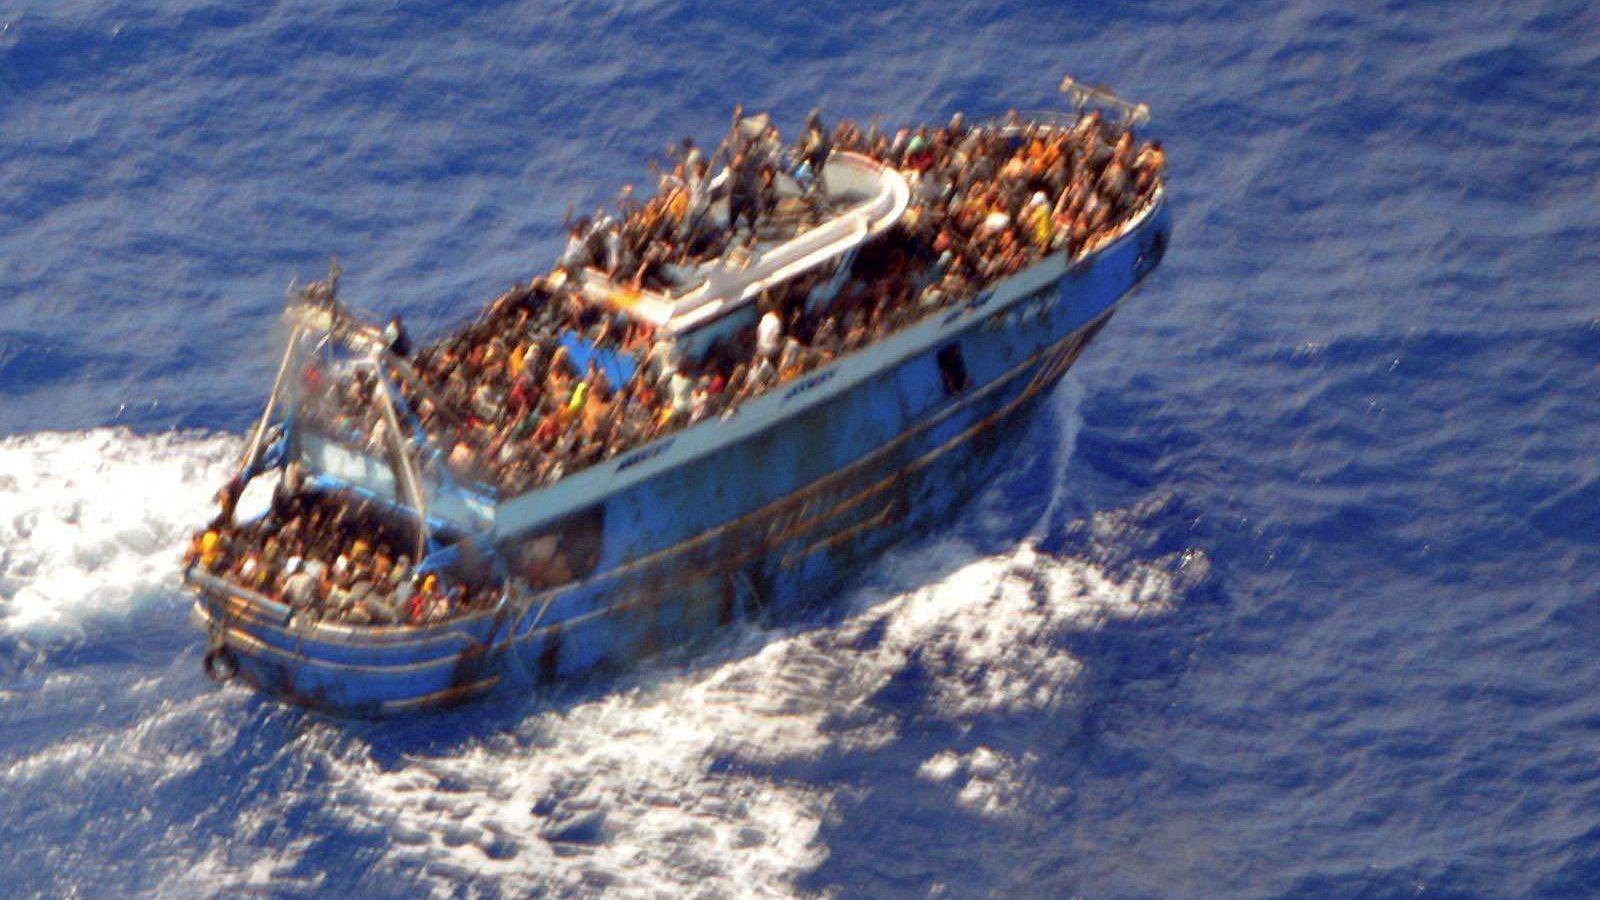 Cinco millonarios en el Atlántico frente a 600 migrantes frente a la costas griegas